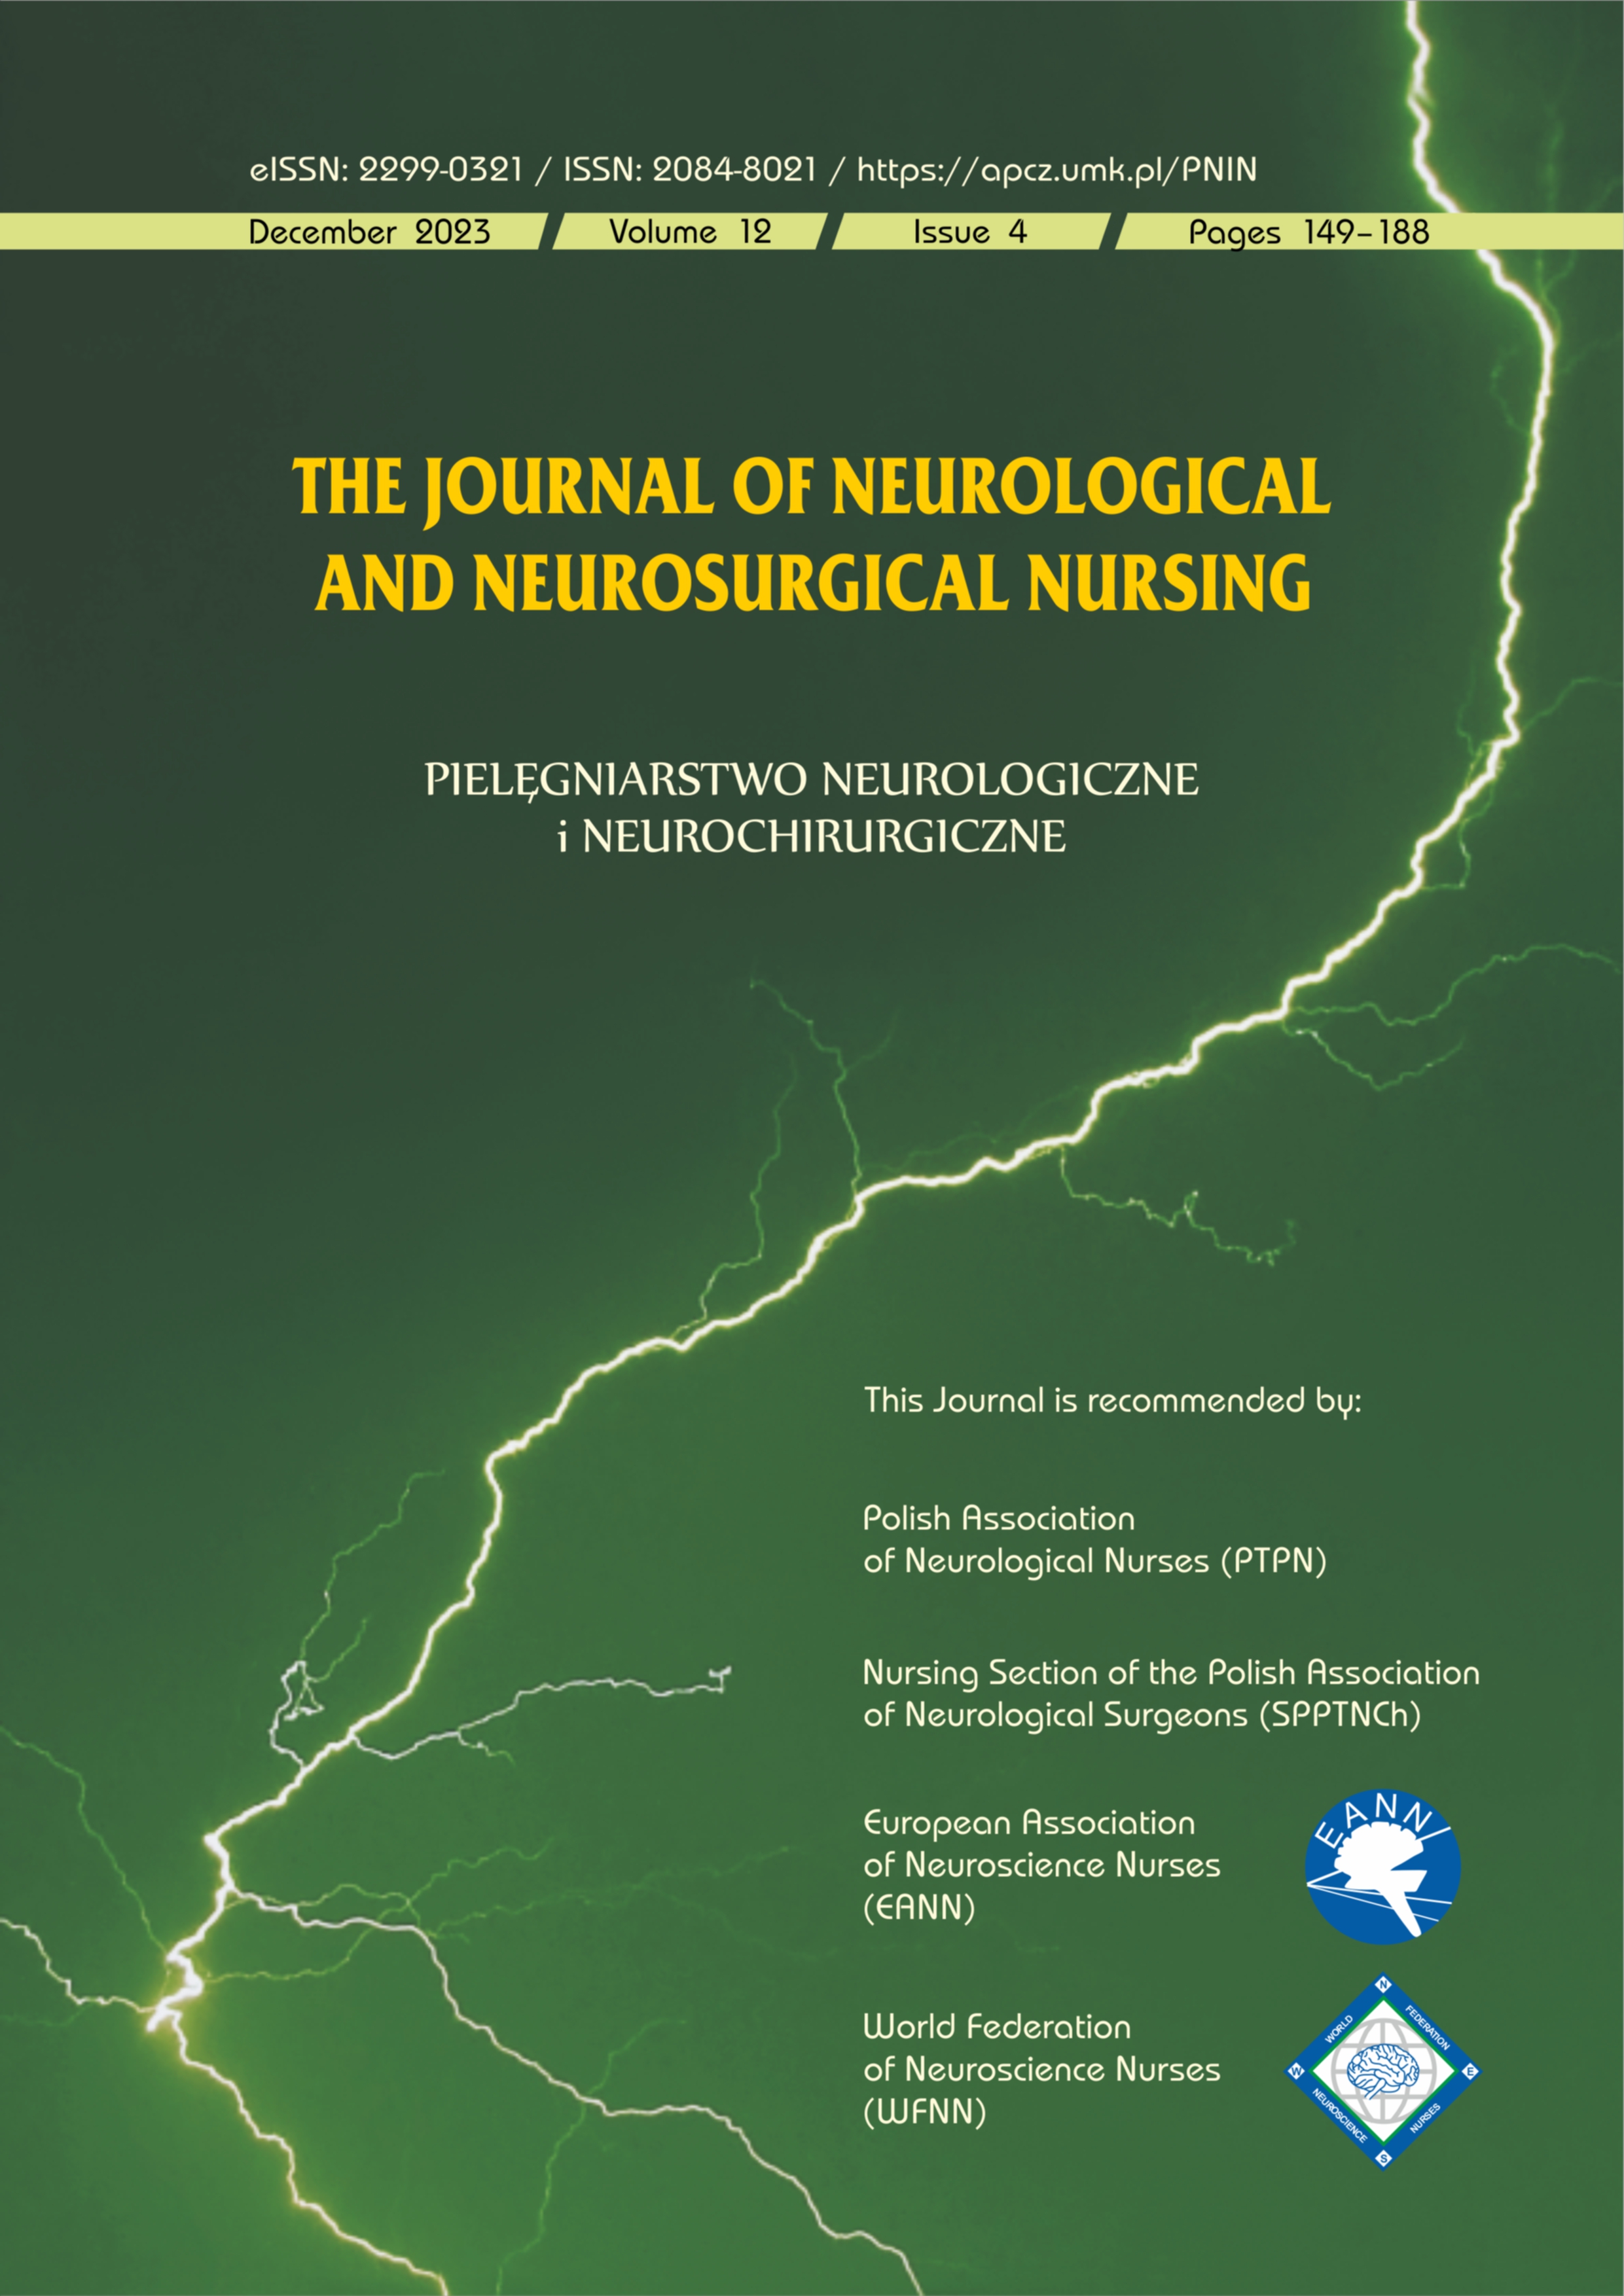 Pielęgniarstwo Neurologiczne i Neurochirurgiczne